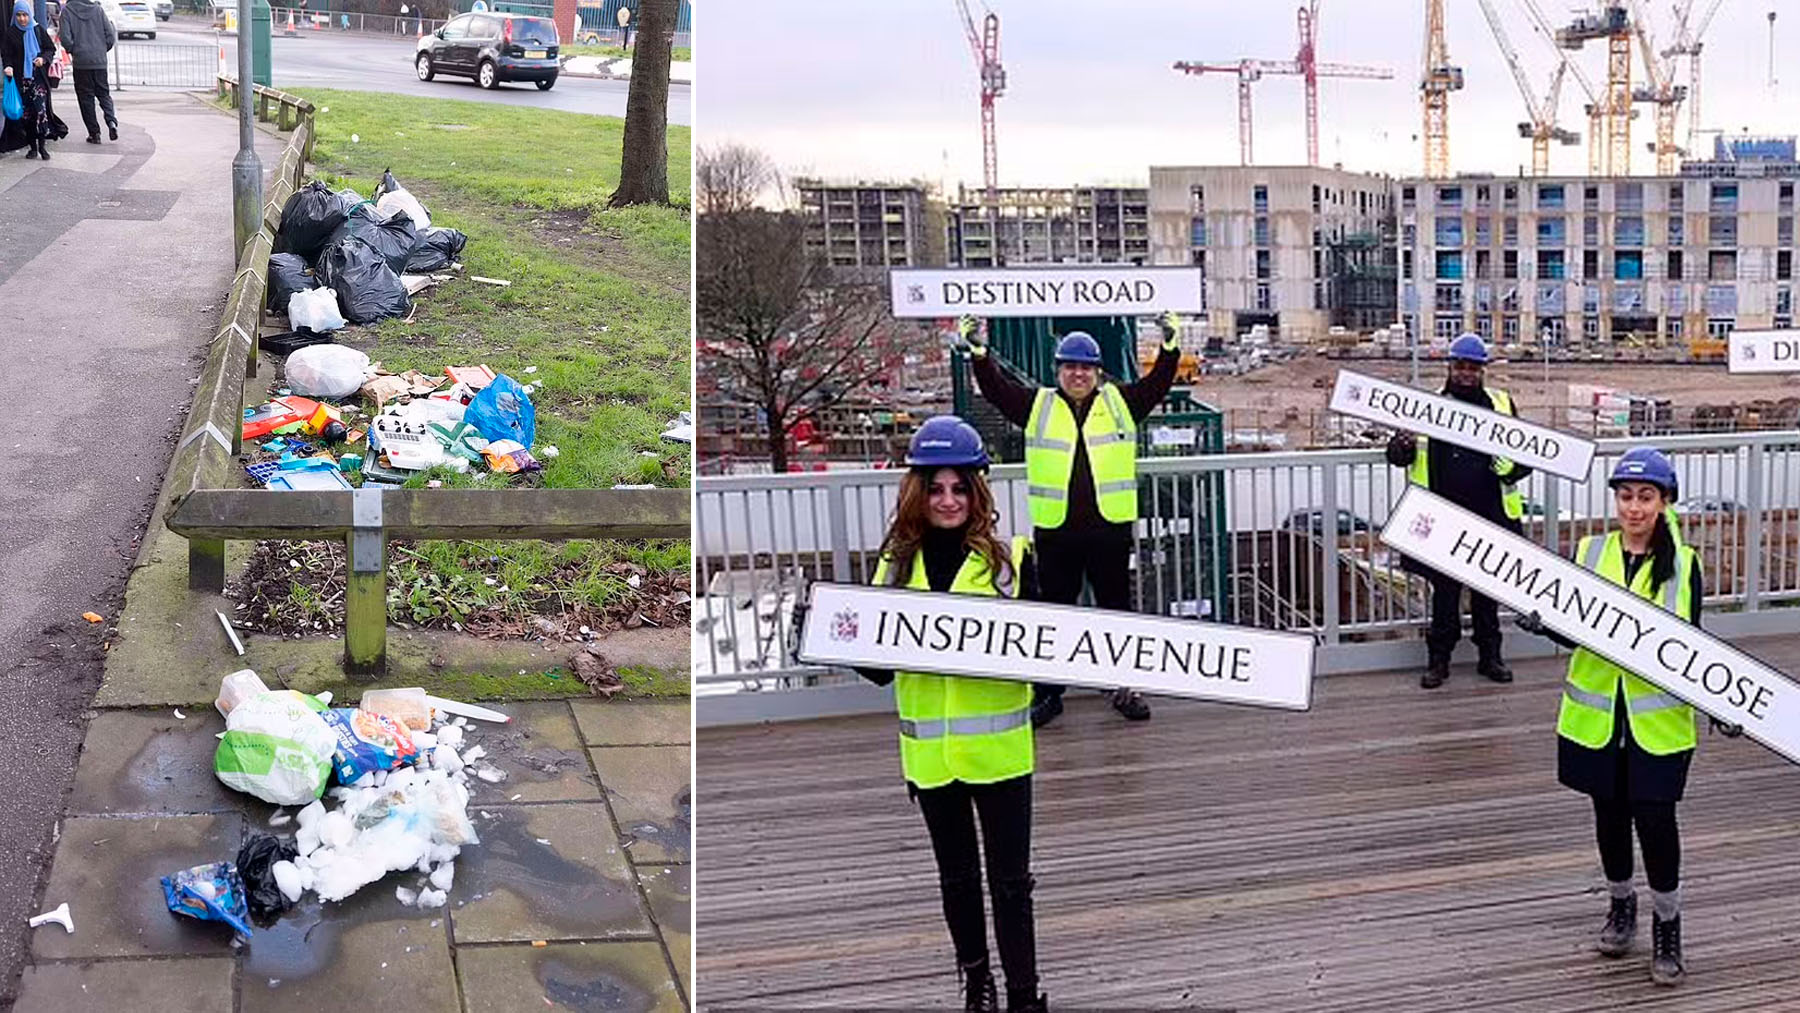 La basura ha aumentado en Birmingham, la ciudad que puso nombres ‘woke’ a varias de sus calles